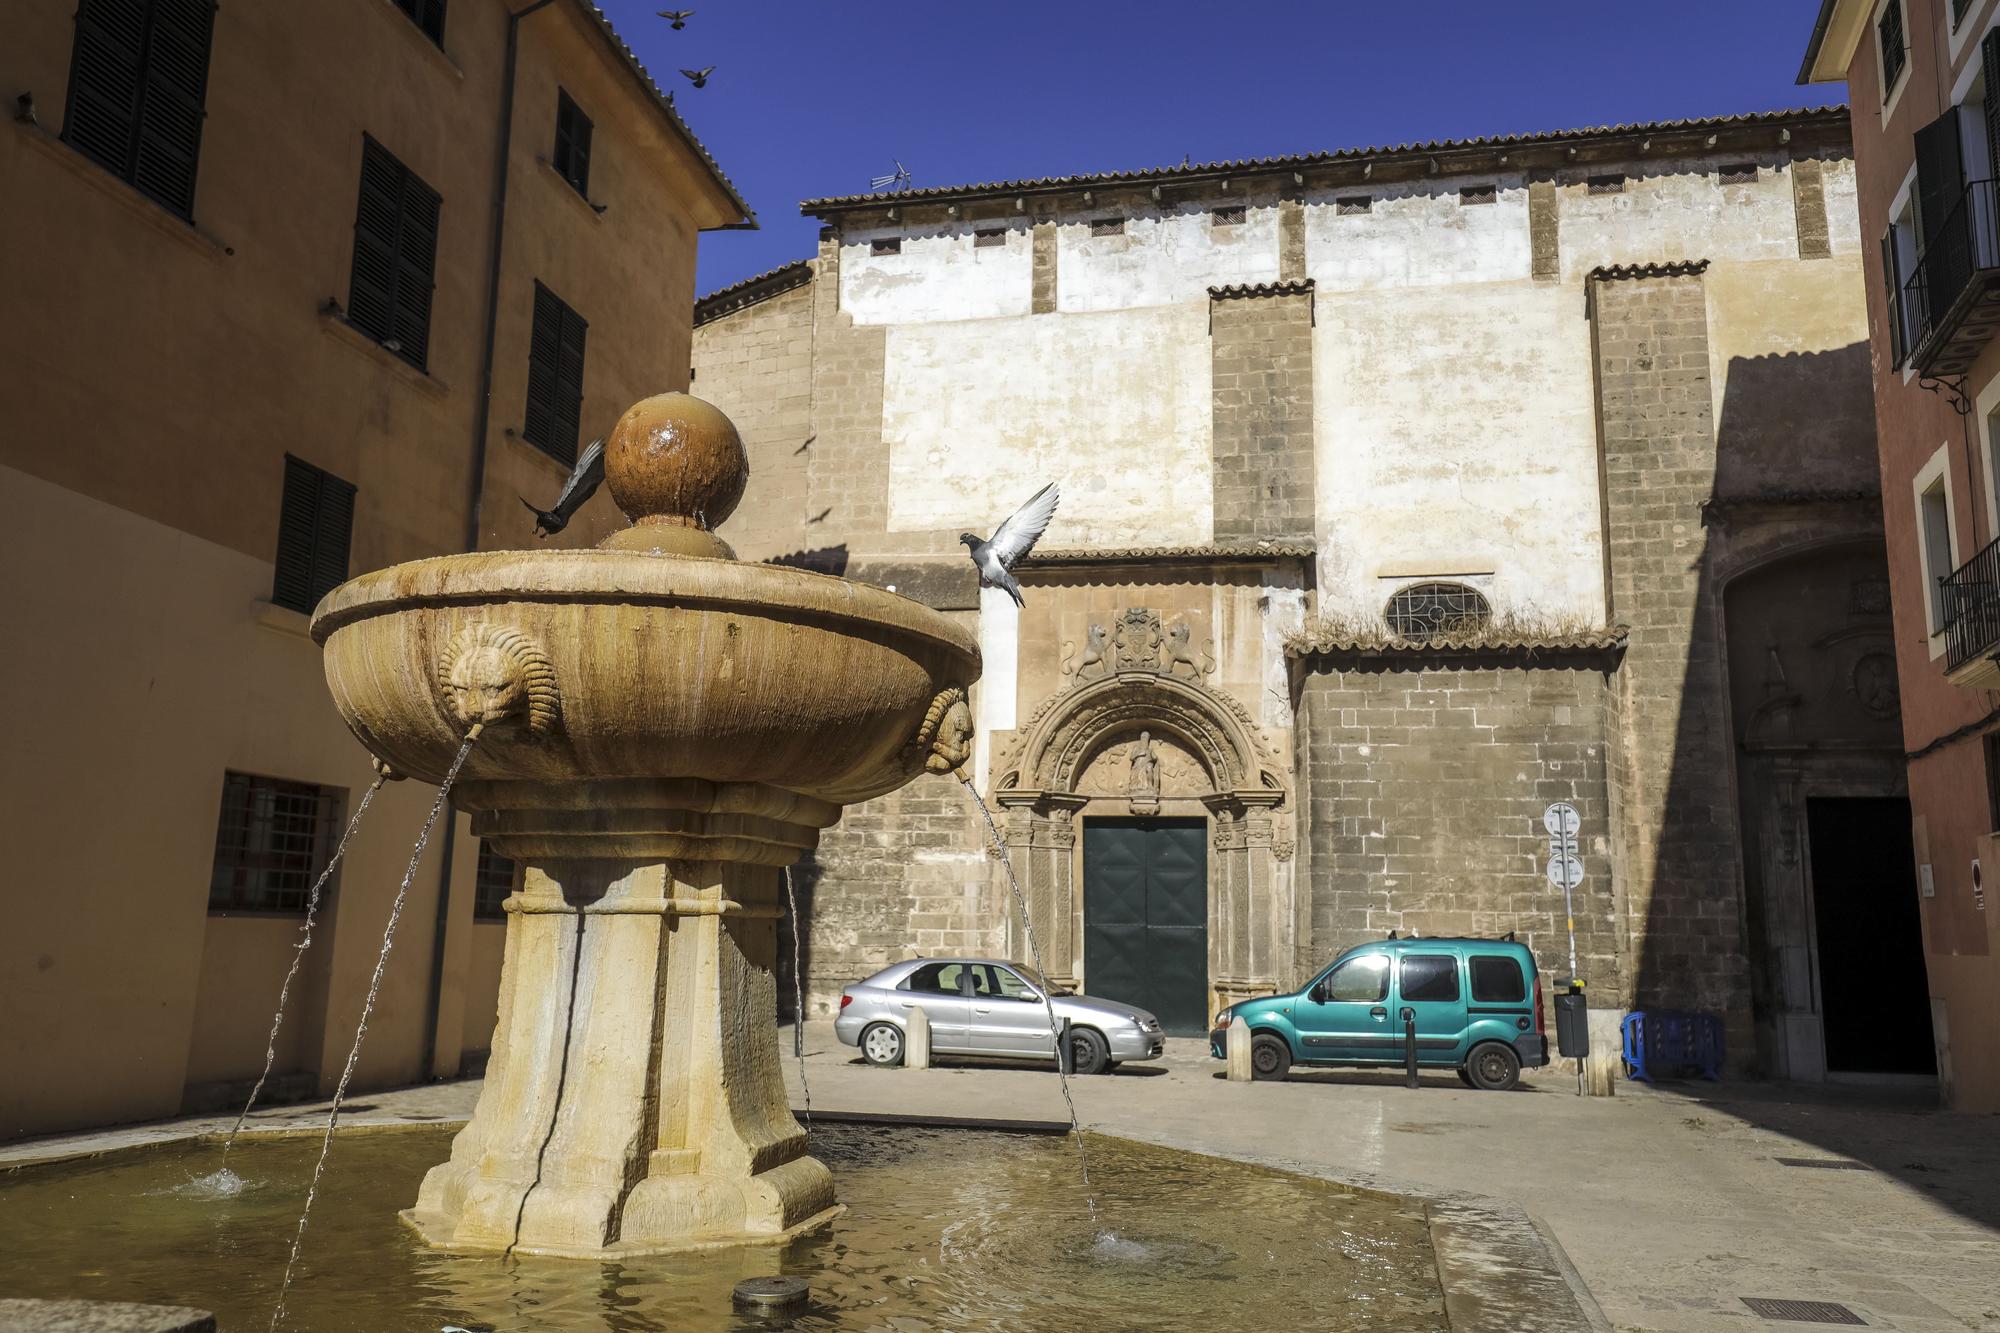 El convento de Sant Jeroni de Palma es propiedad de la orden de monjas Jerónimas que lo habitaban hasta hace unos años